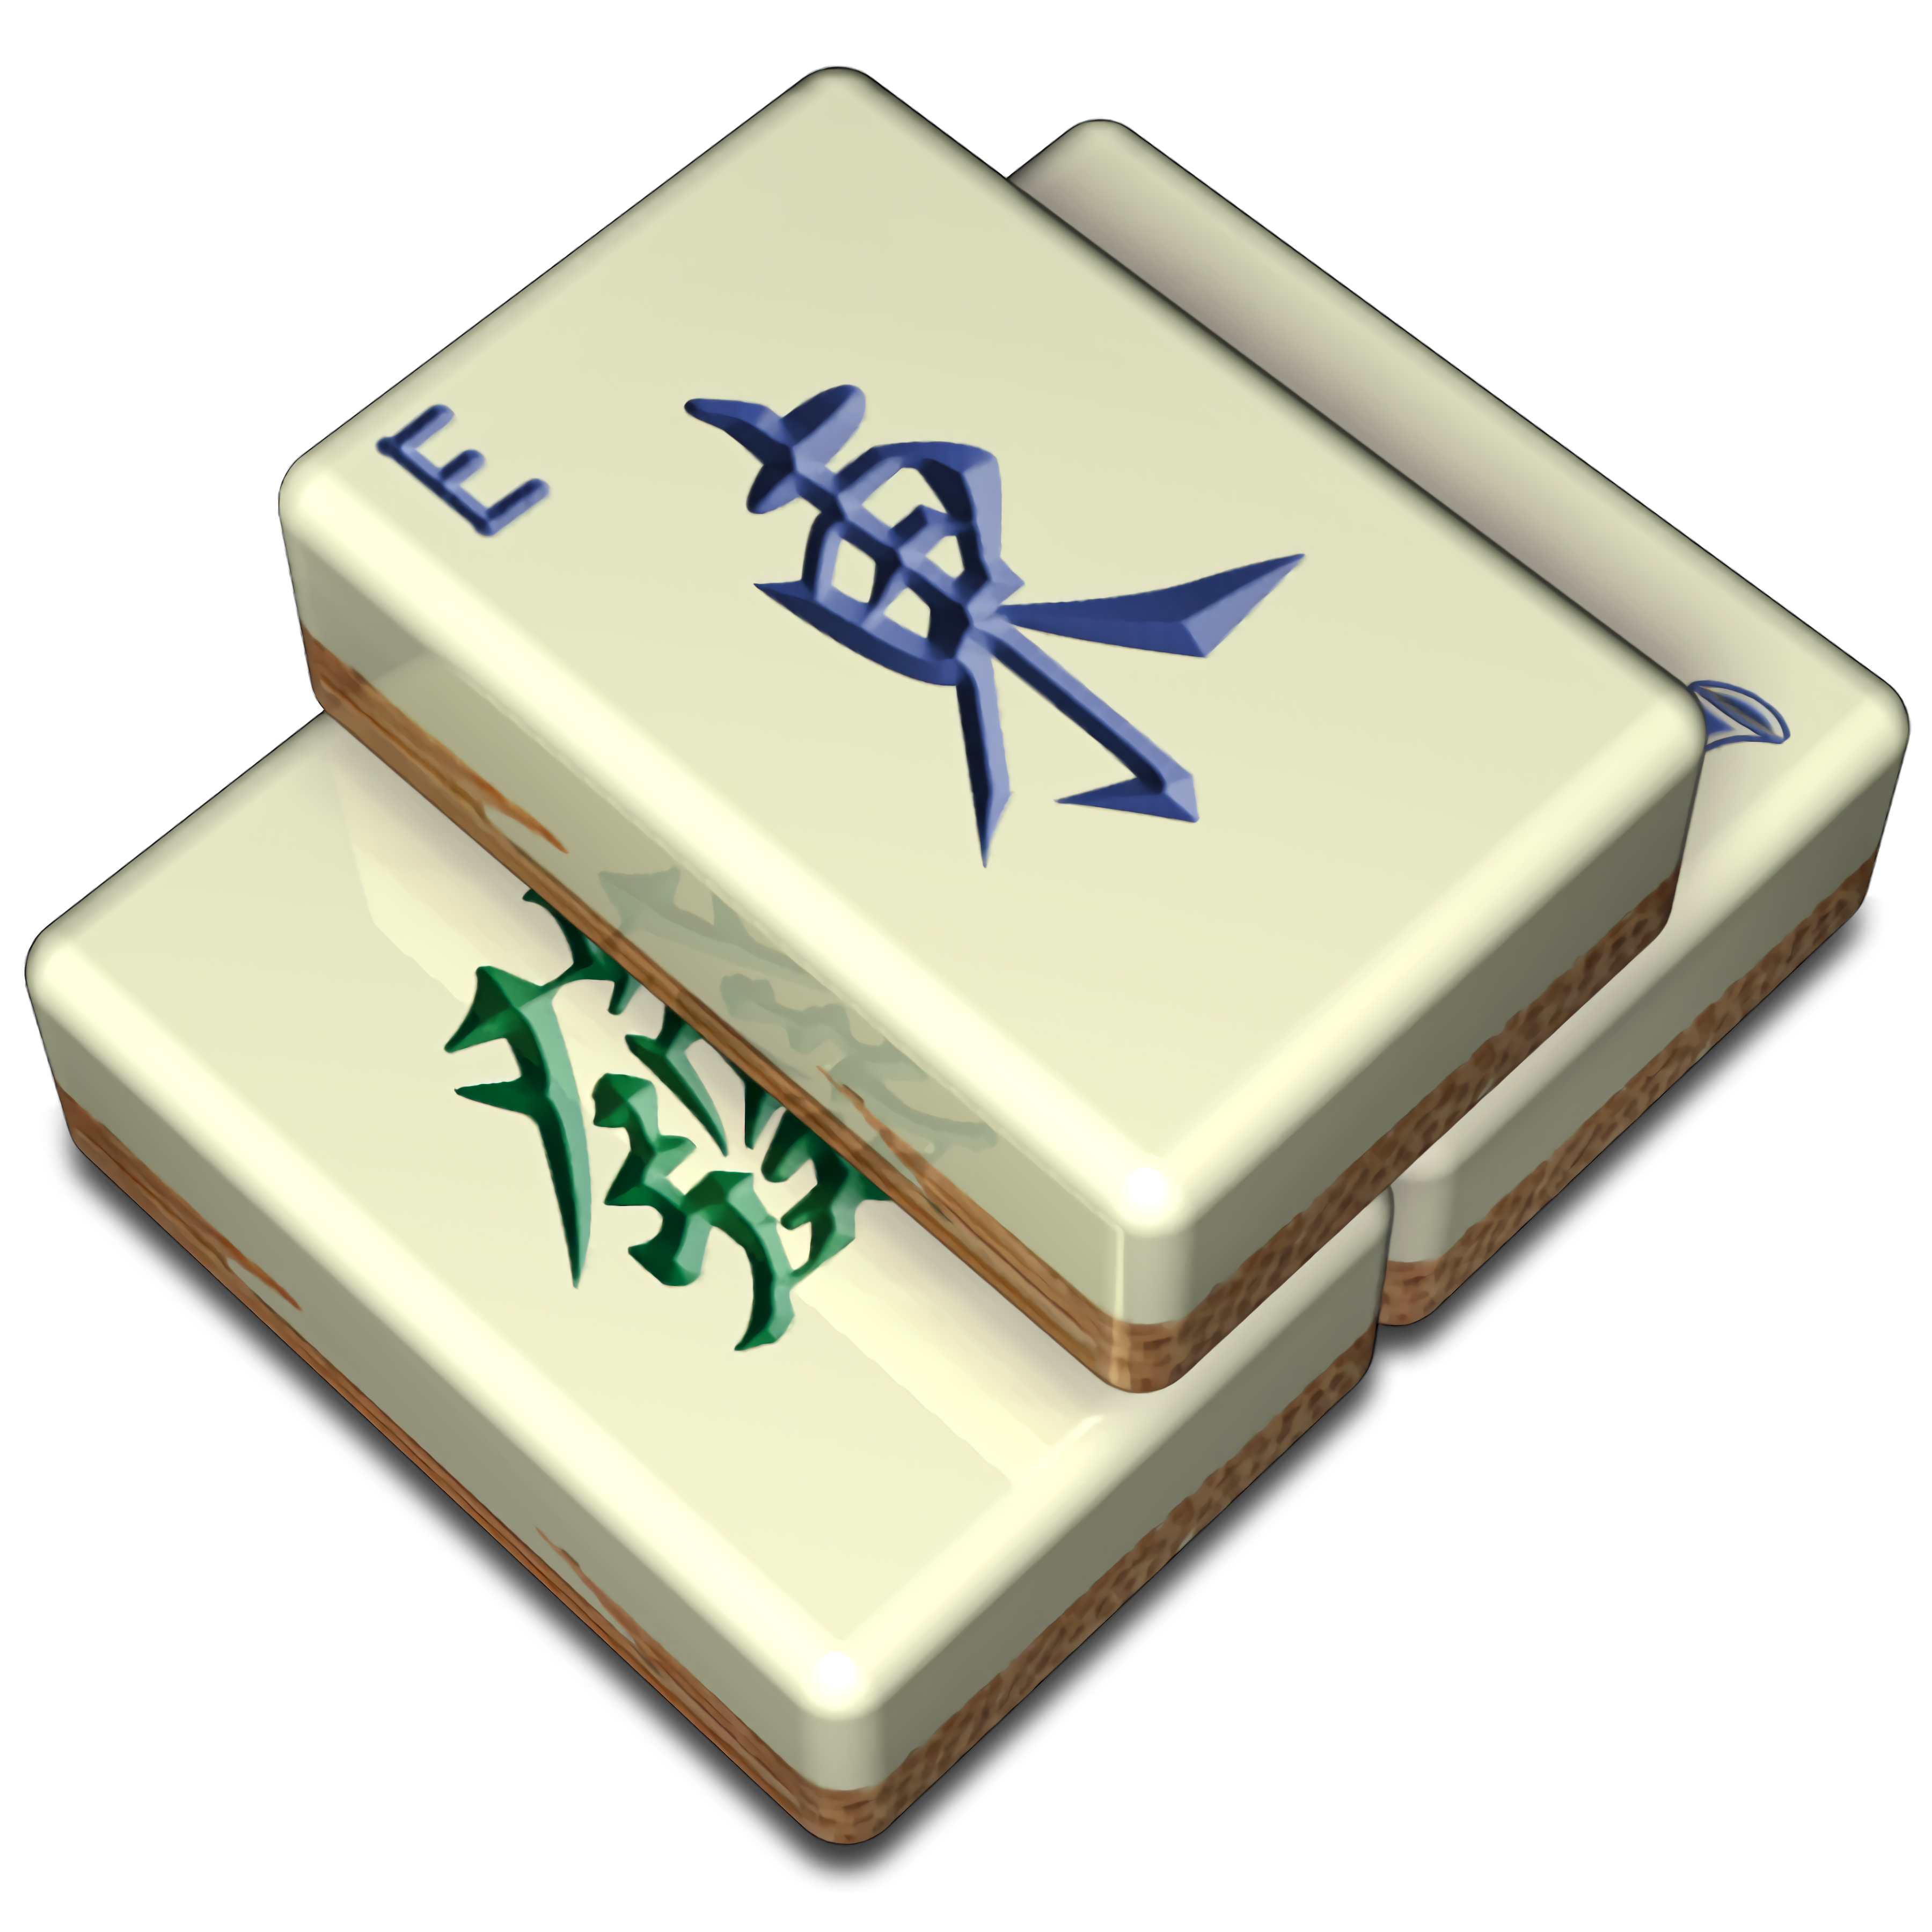 Giochi di Mahjong